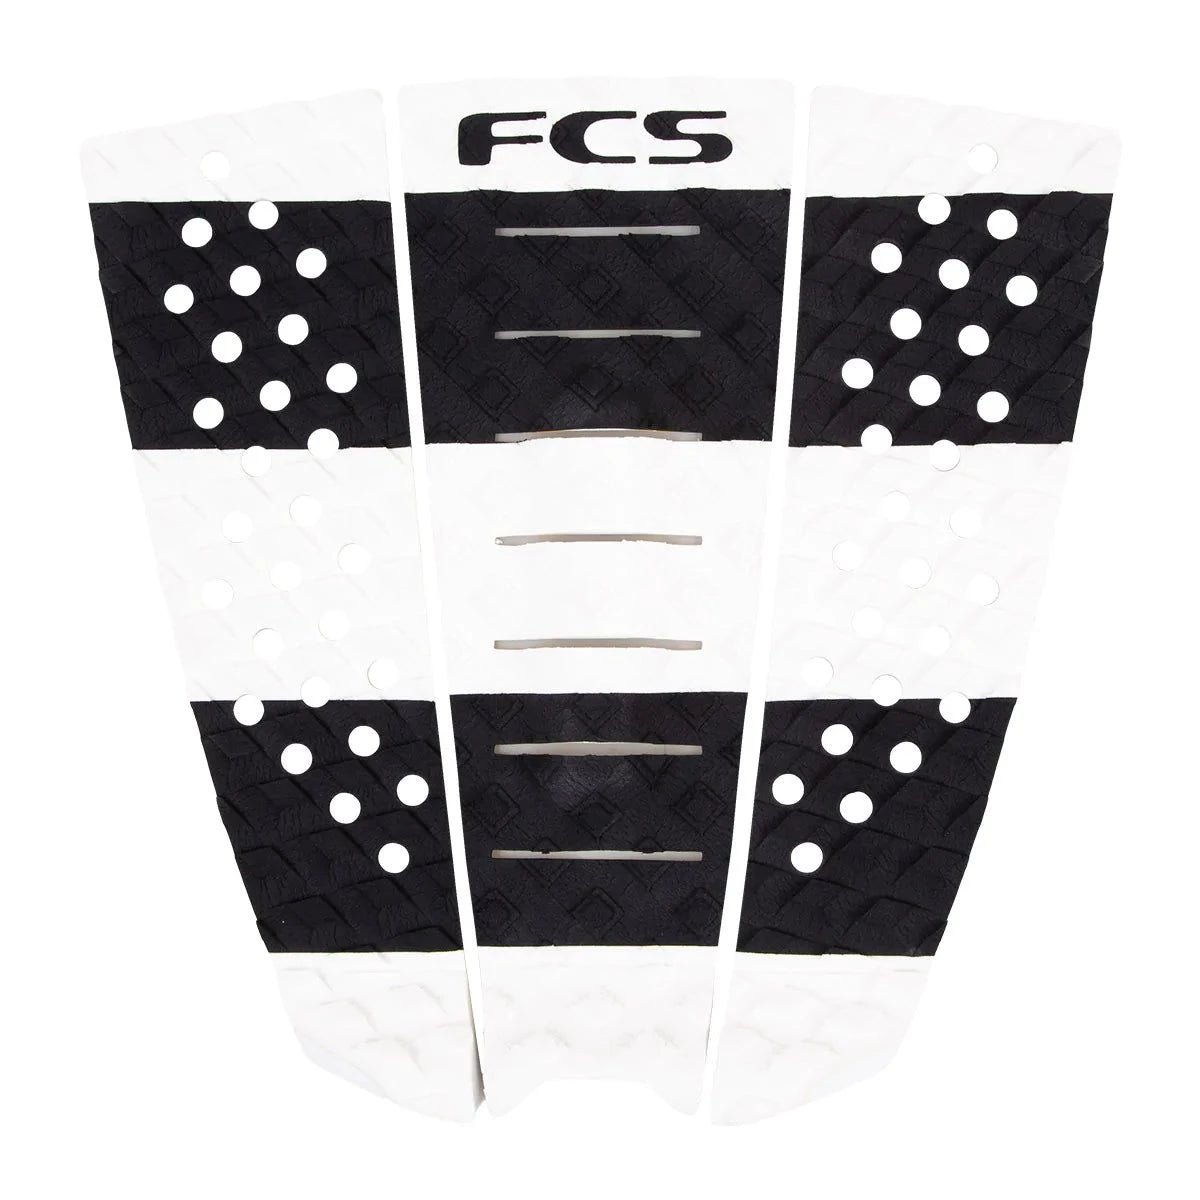 FCS Jeremy Flores Traction-FCS-fcs,fcs fins,FCS II,fins,gear,jeremy flores,surfboard,traction